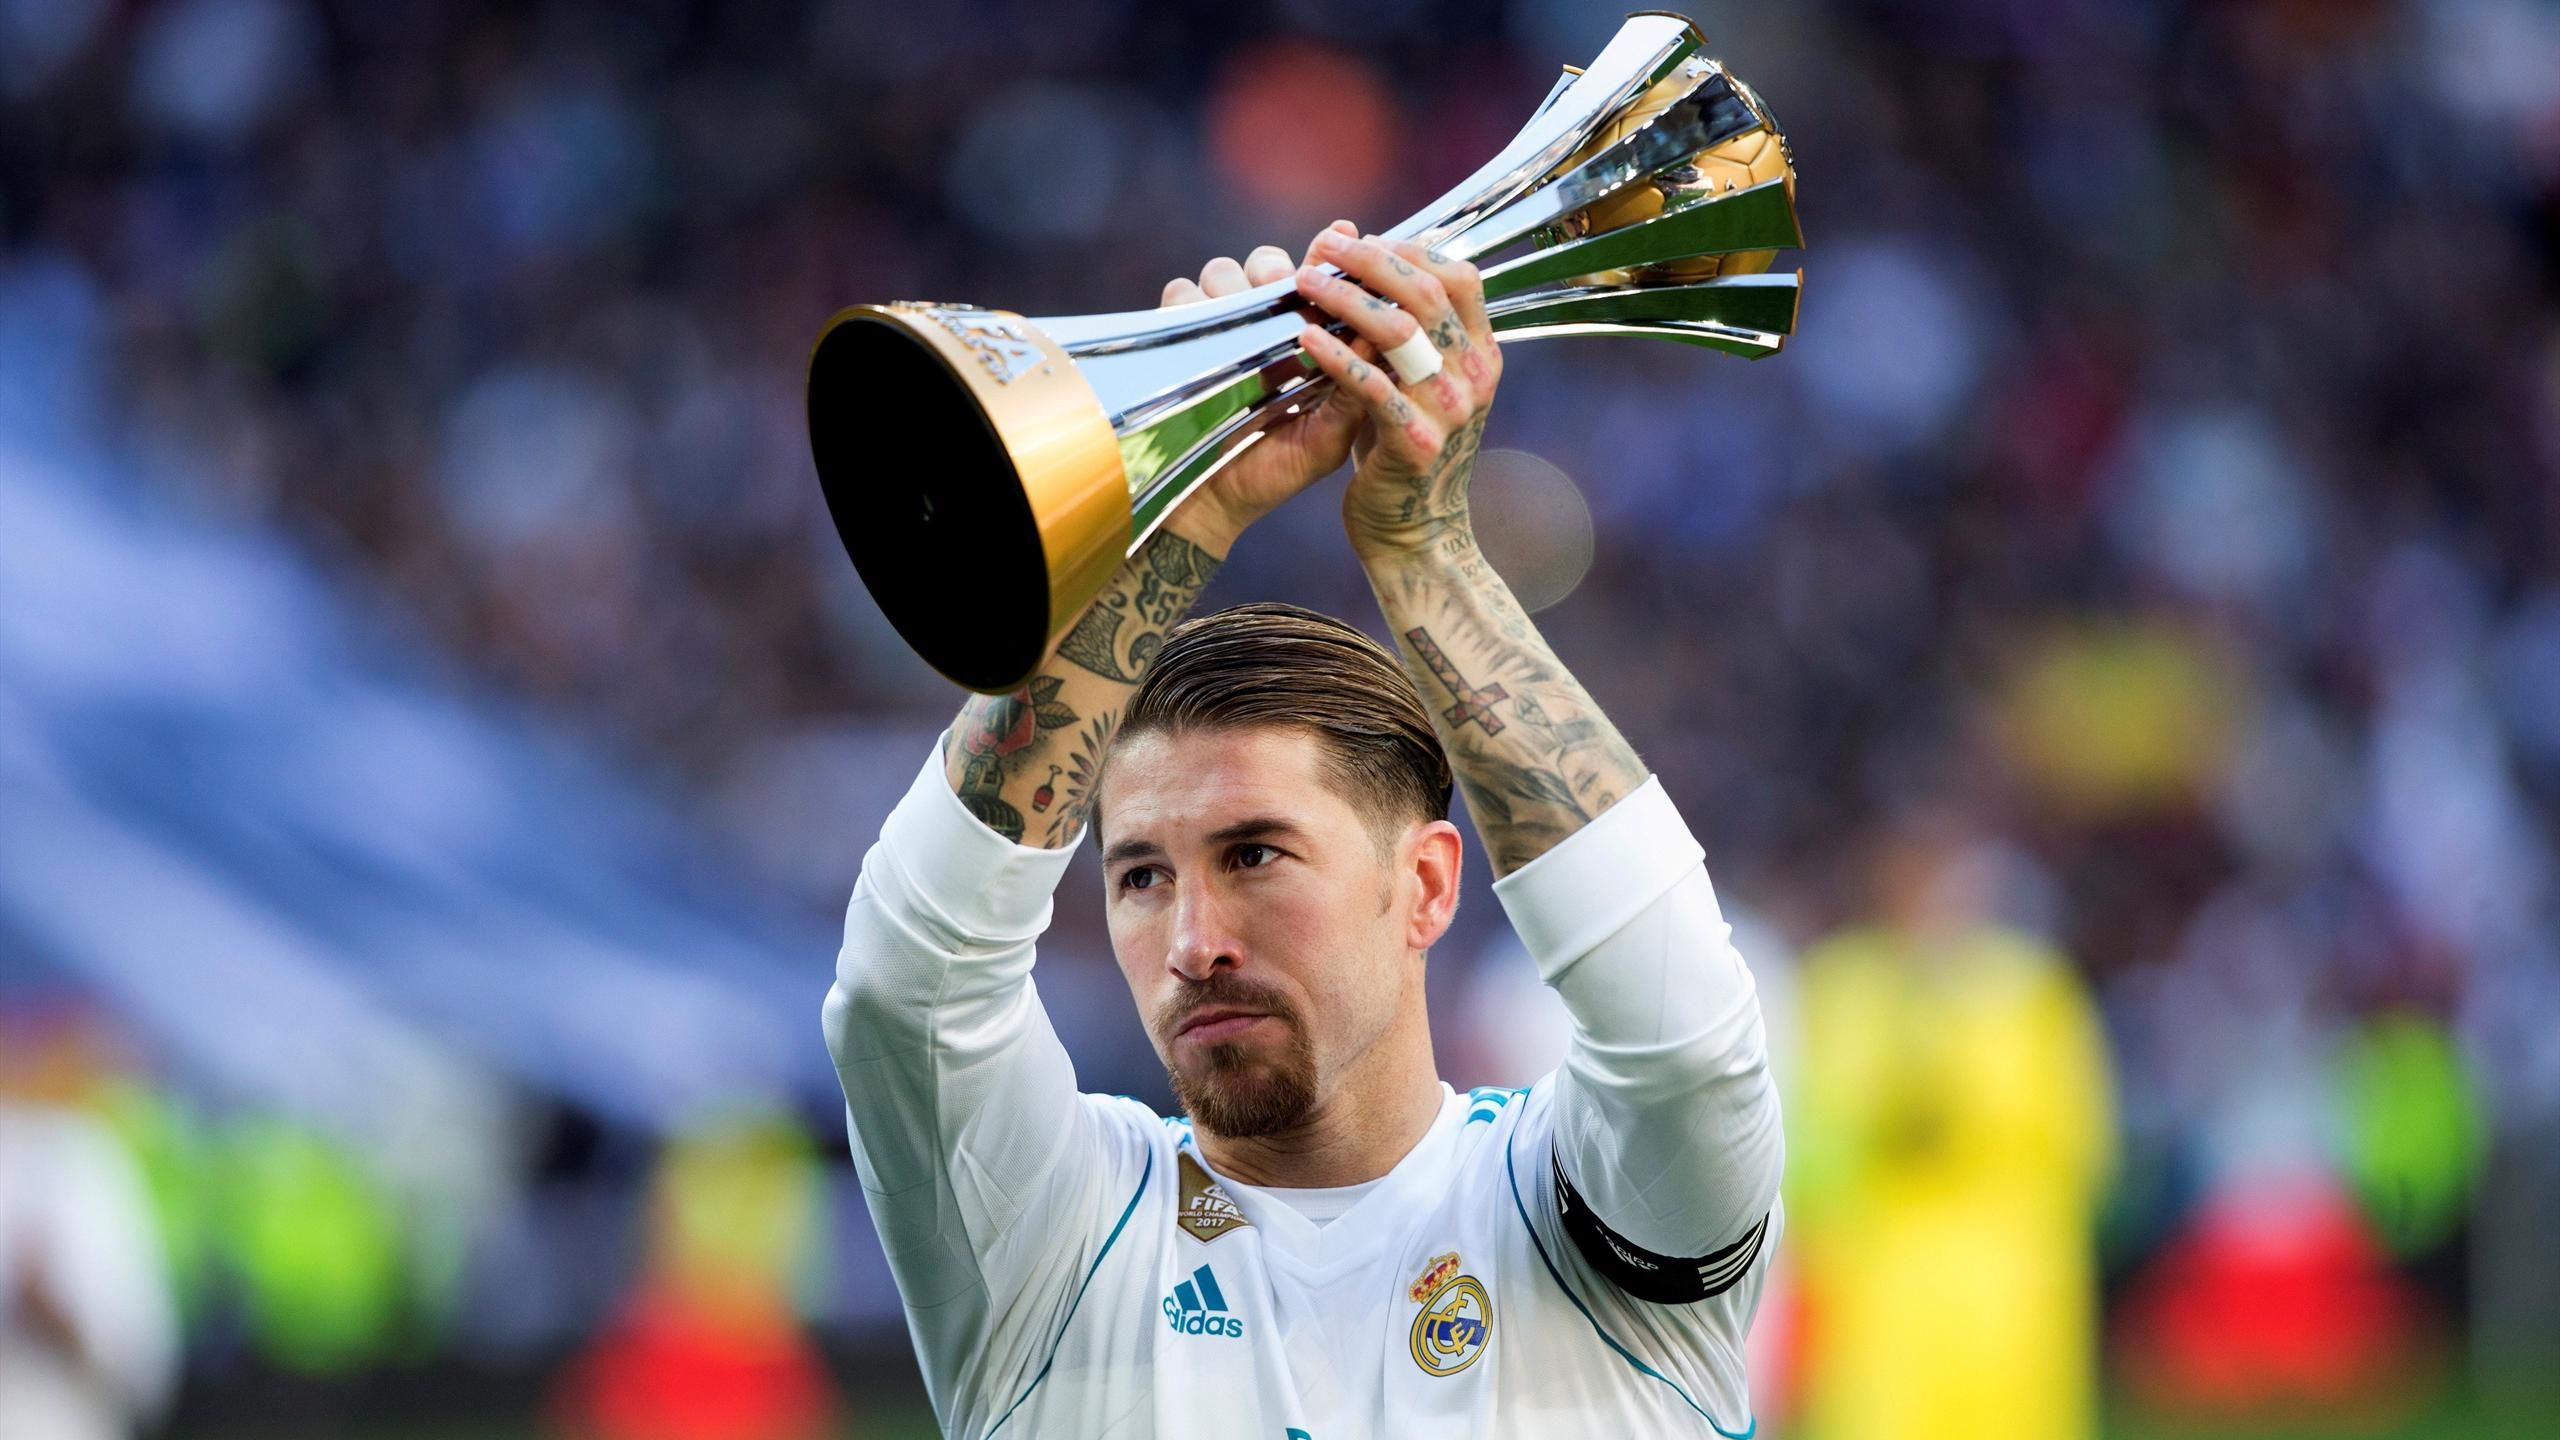 Mundial de 2018: Fechas, horarios y dónde ver los partidos del Real Madrid - Eurosport